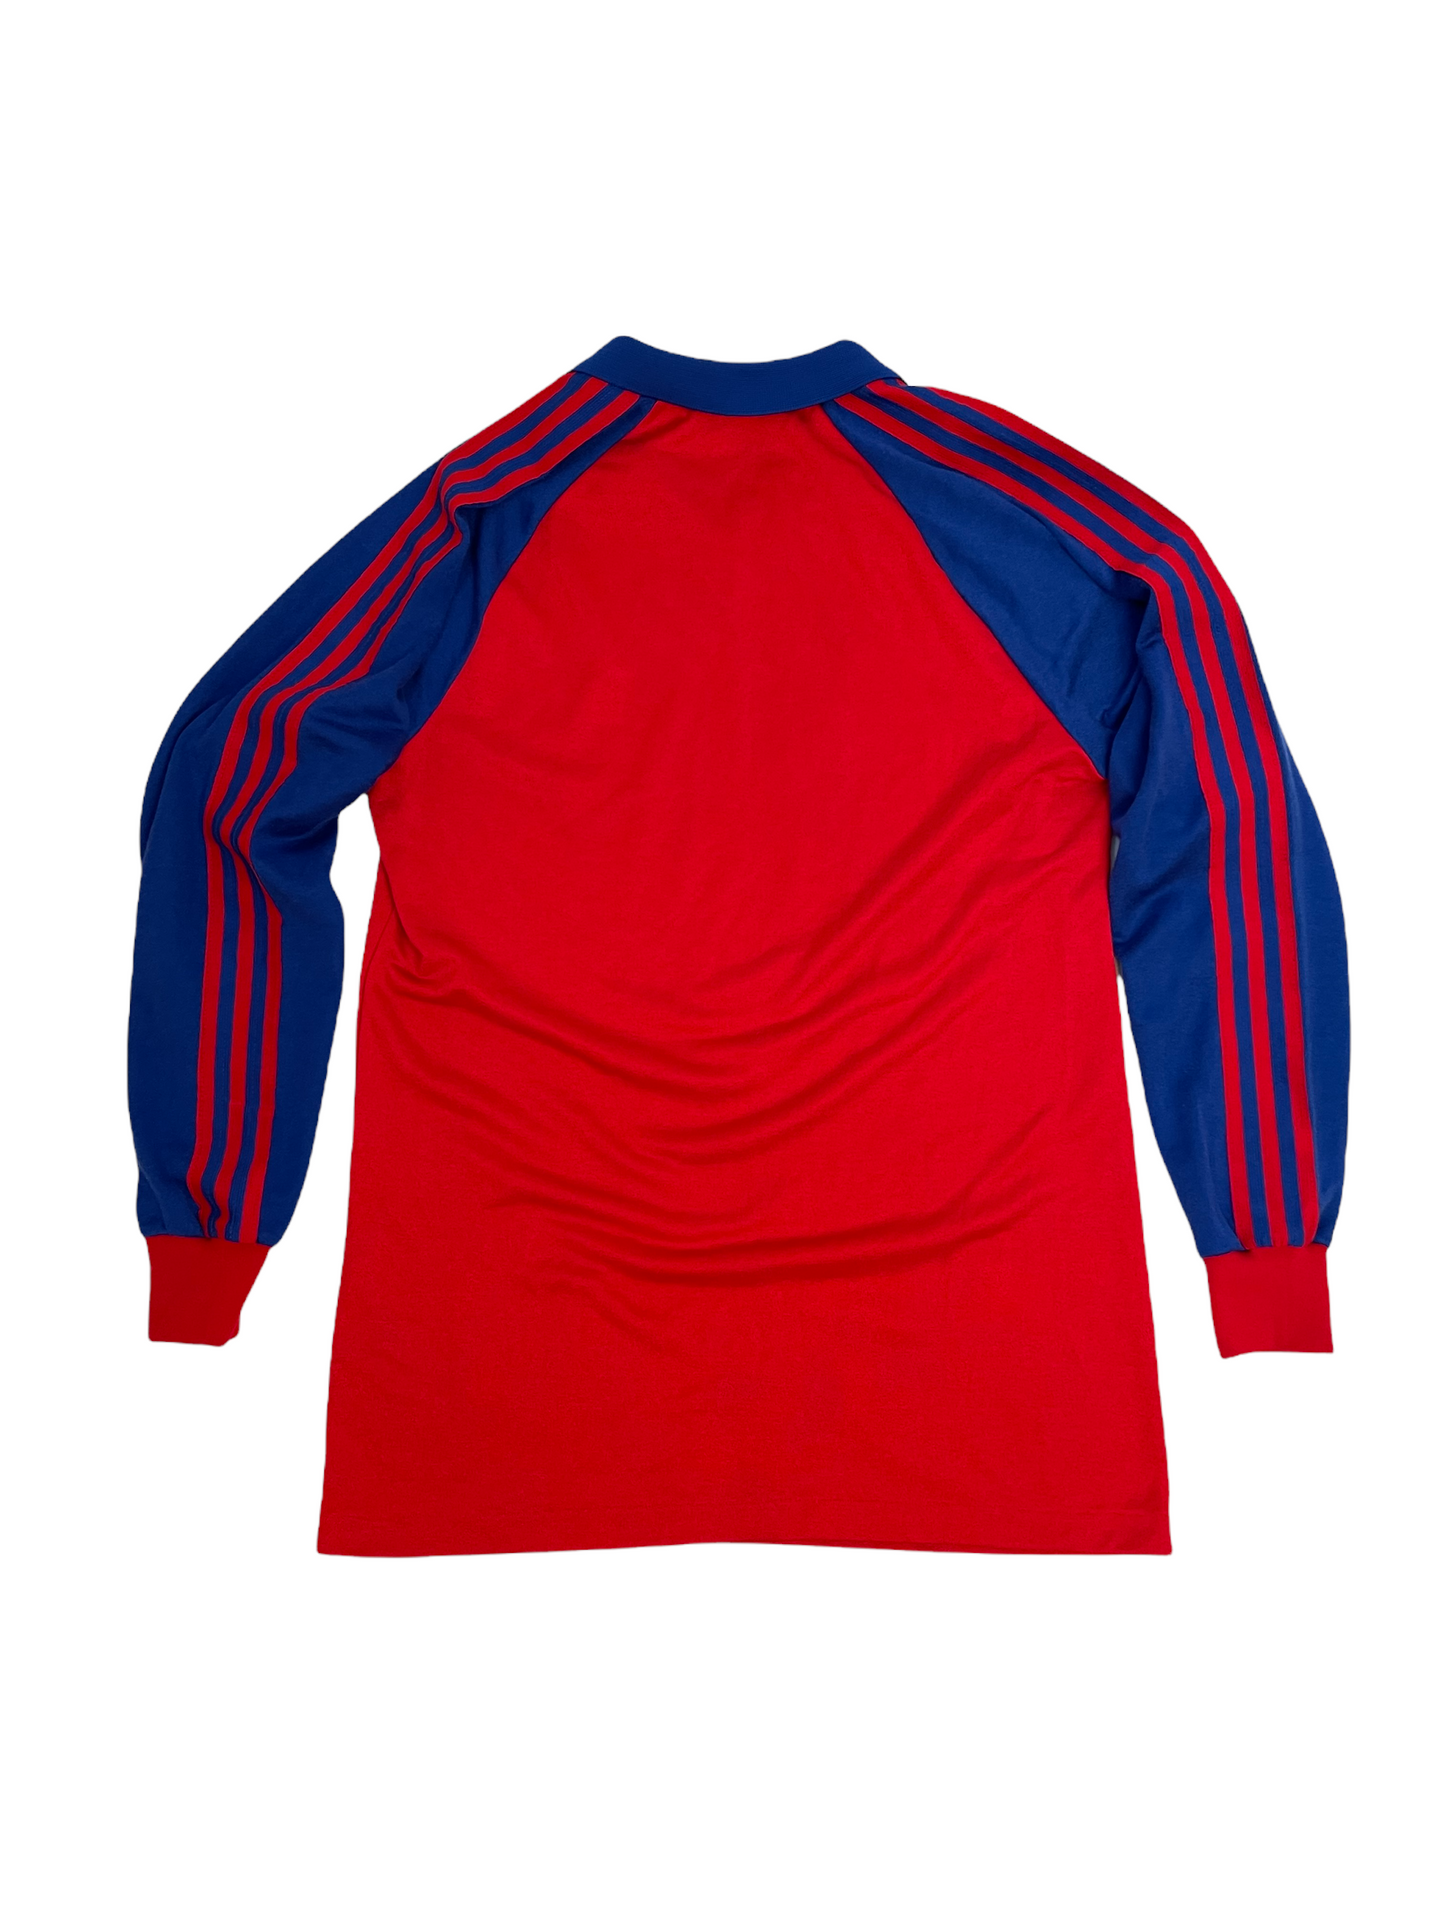 Vintage F.C. Basel Adidas 1980-1982 Away Football Shirt Size L Red Blue Pax Die Besser-Leben-Versicherung. Made in West Germany Size M